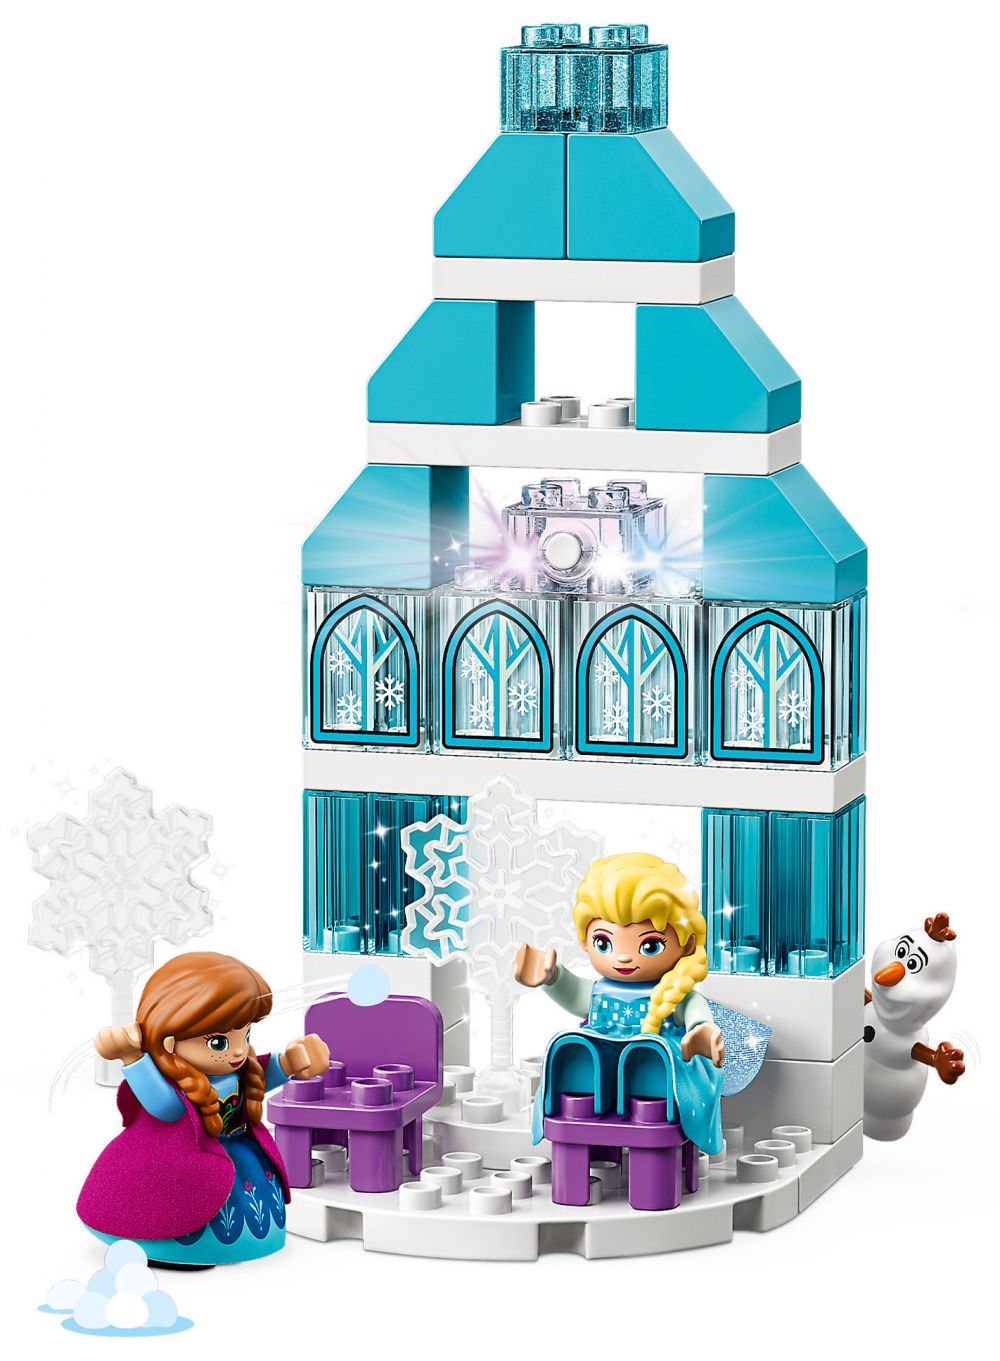 LEGO Duplo 10899 pas cher, Le château de la Reine des neiges